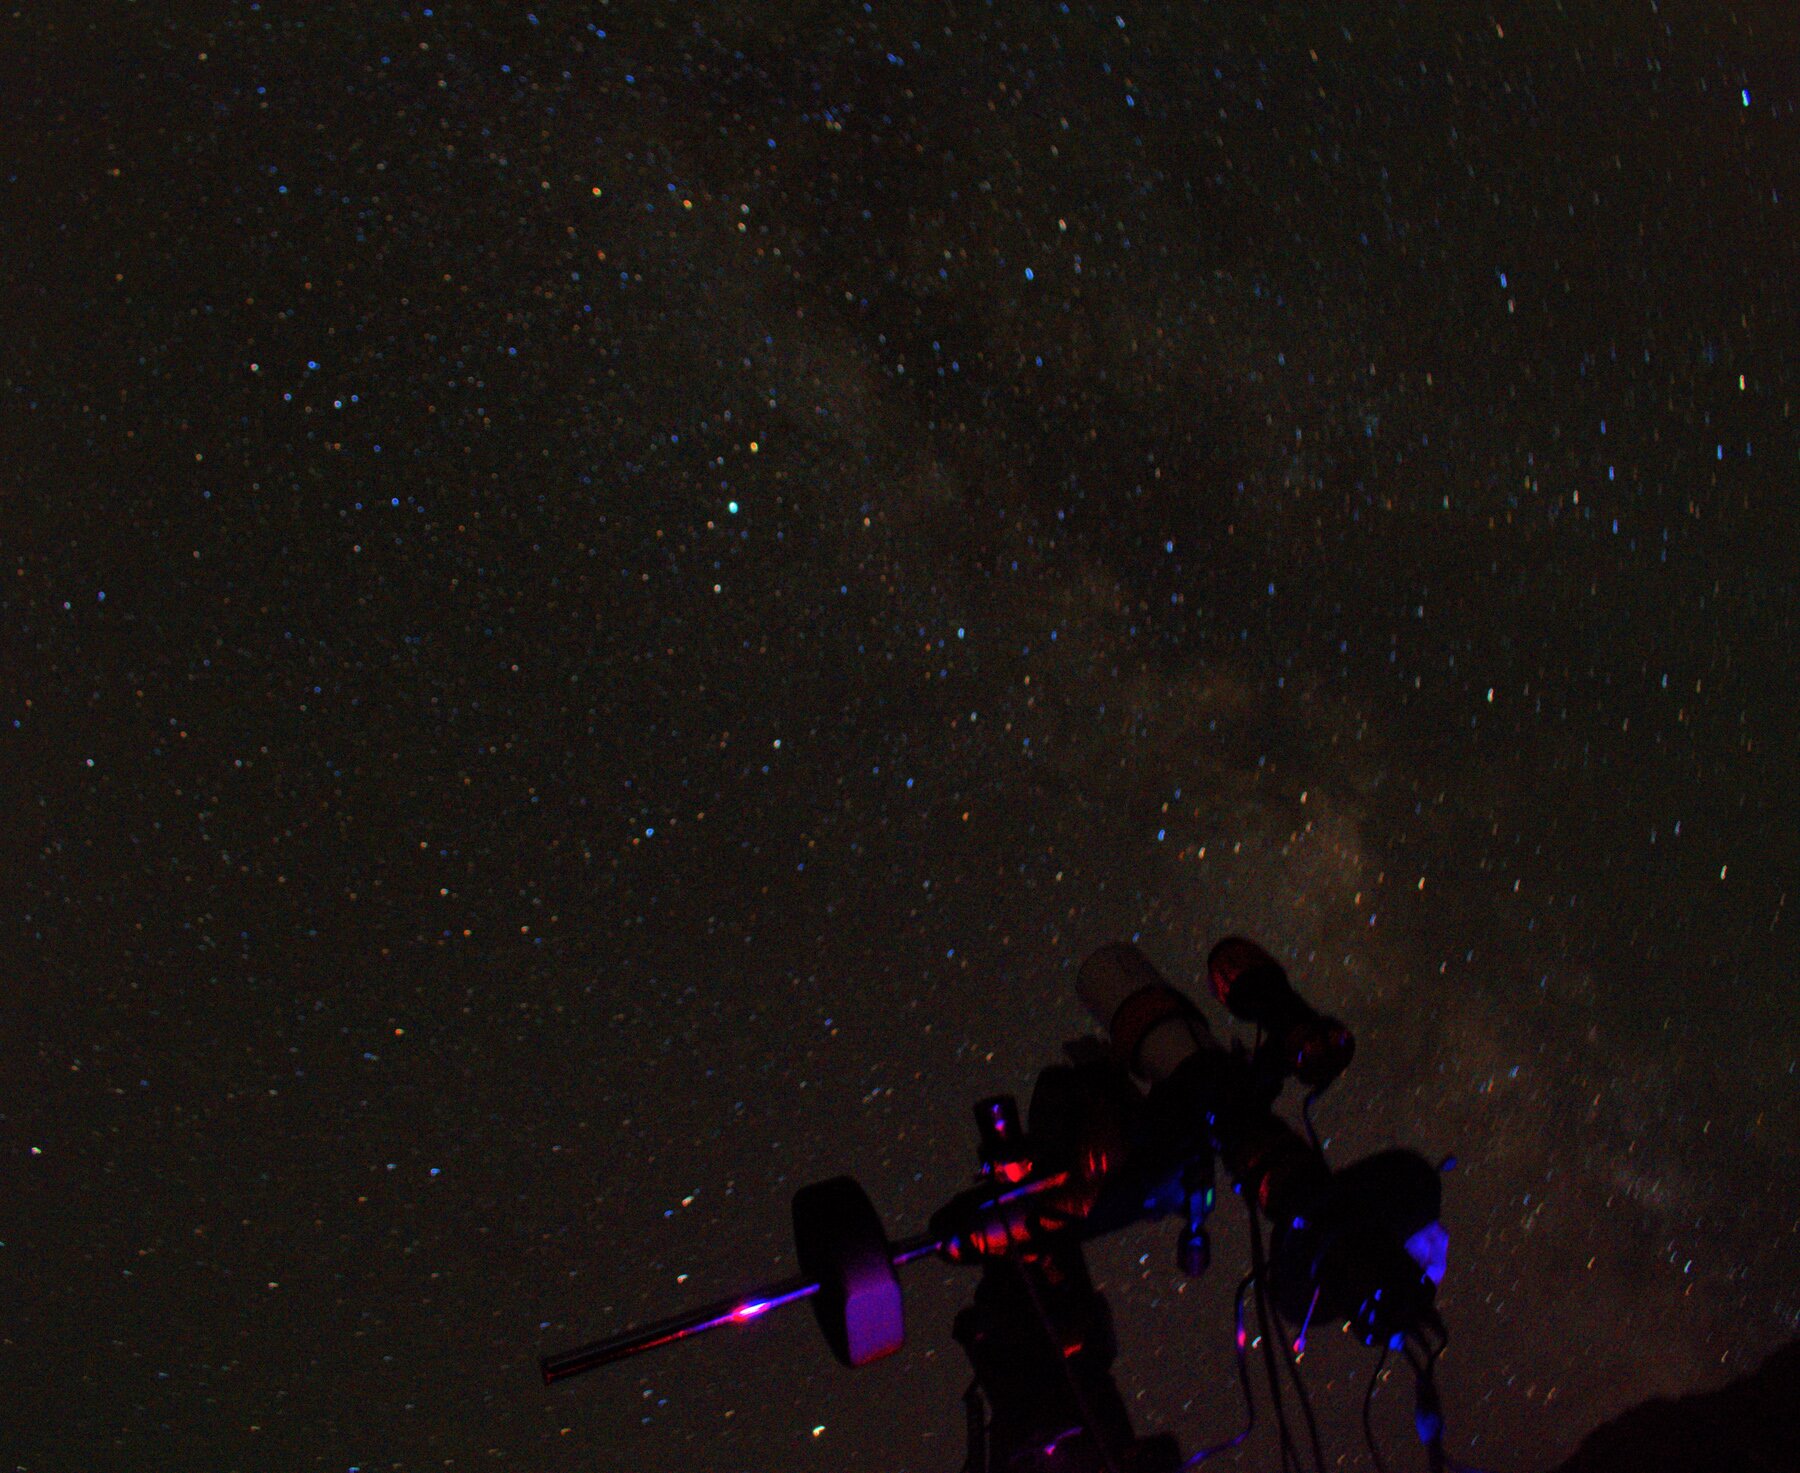 Un'apparecchiatura per fotografie astronomiche nel buio di un cielo stellato